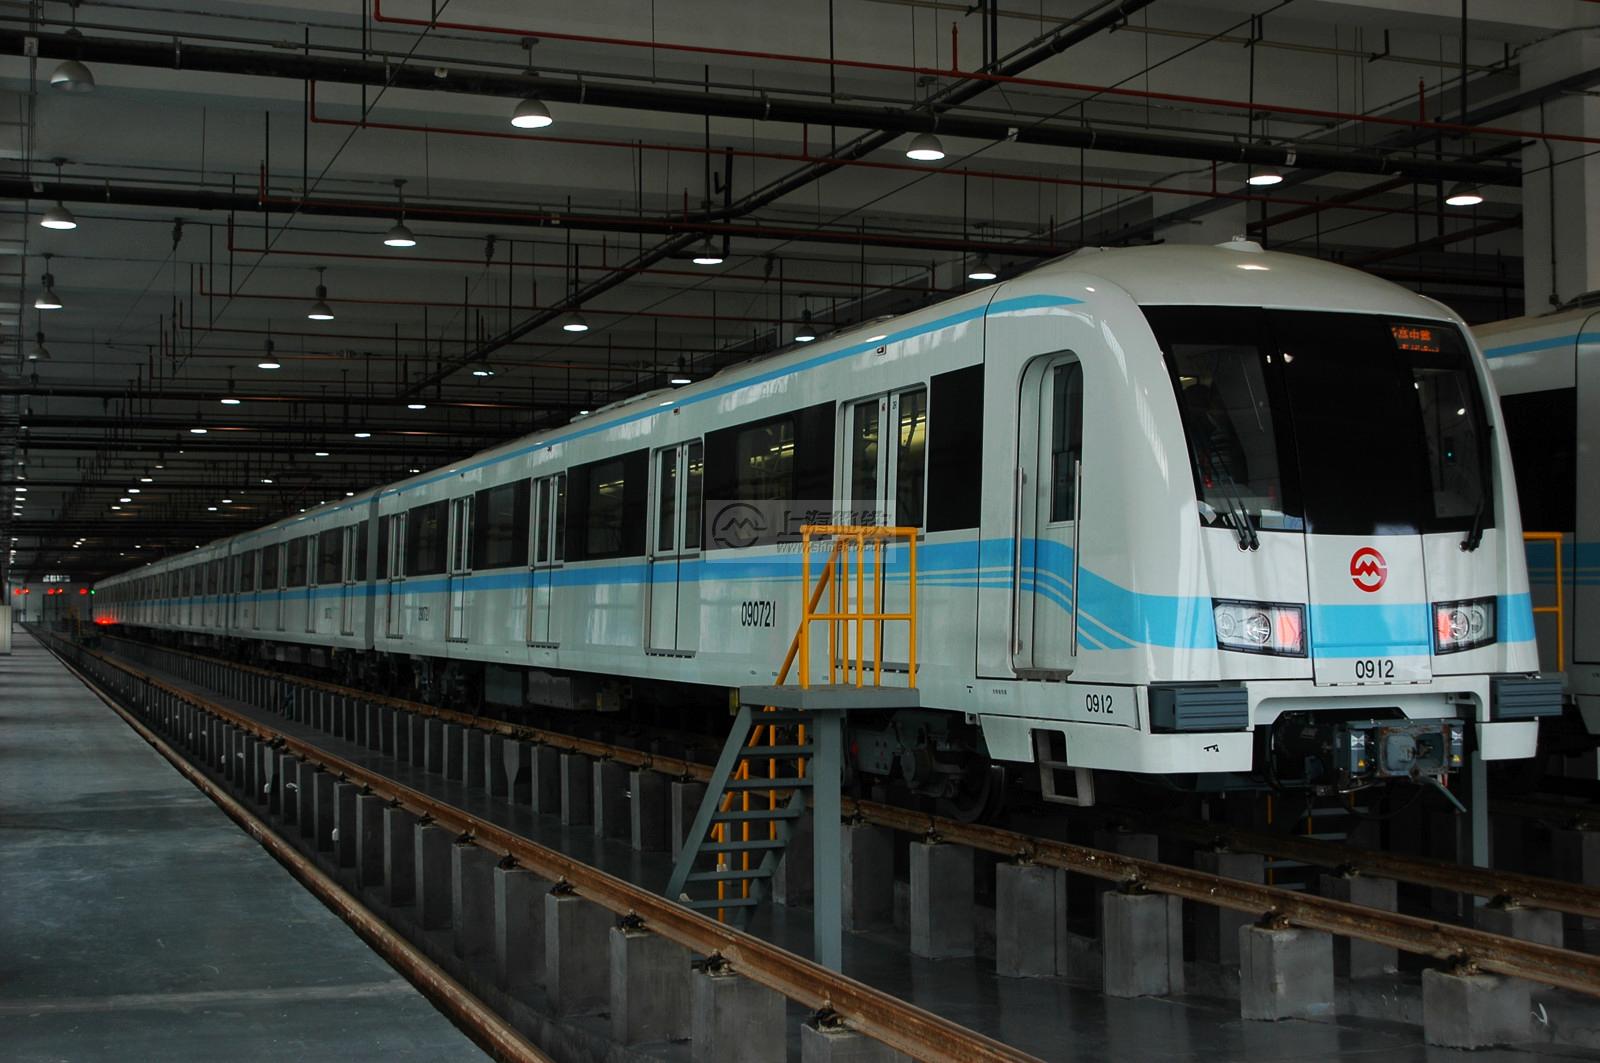 上海捷運9號線首列第二批到貨車輛0912號車